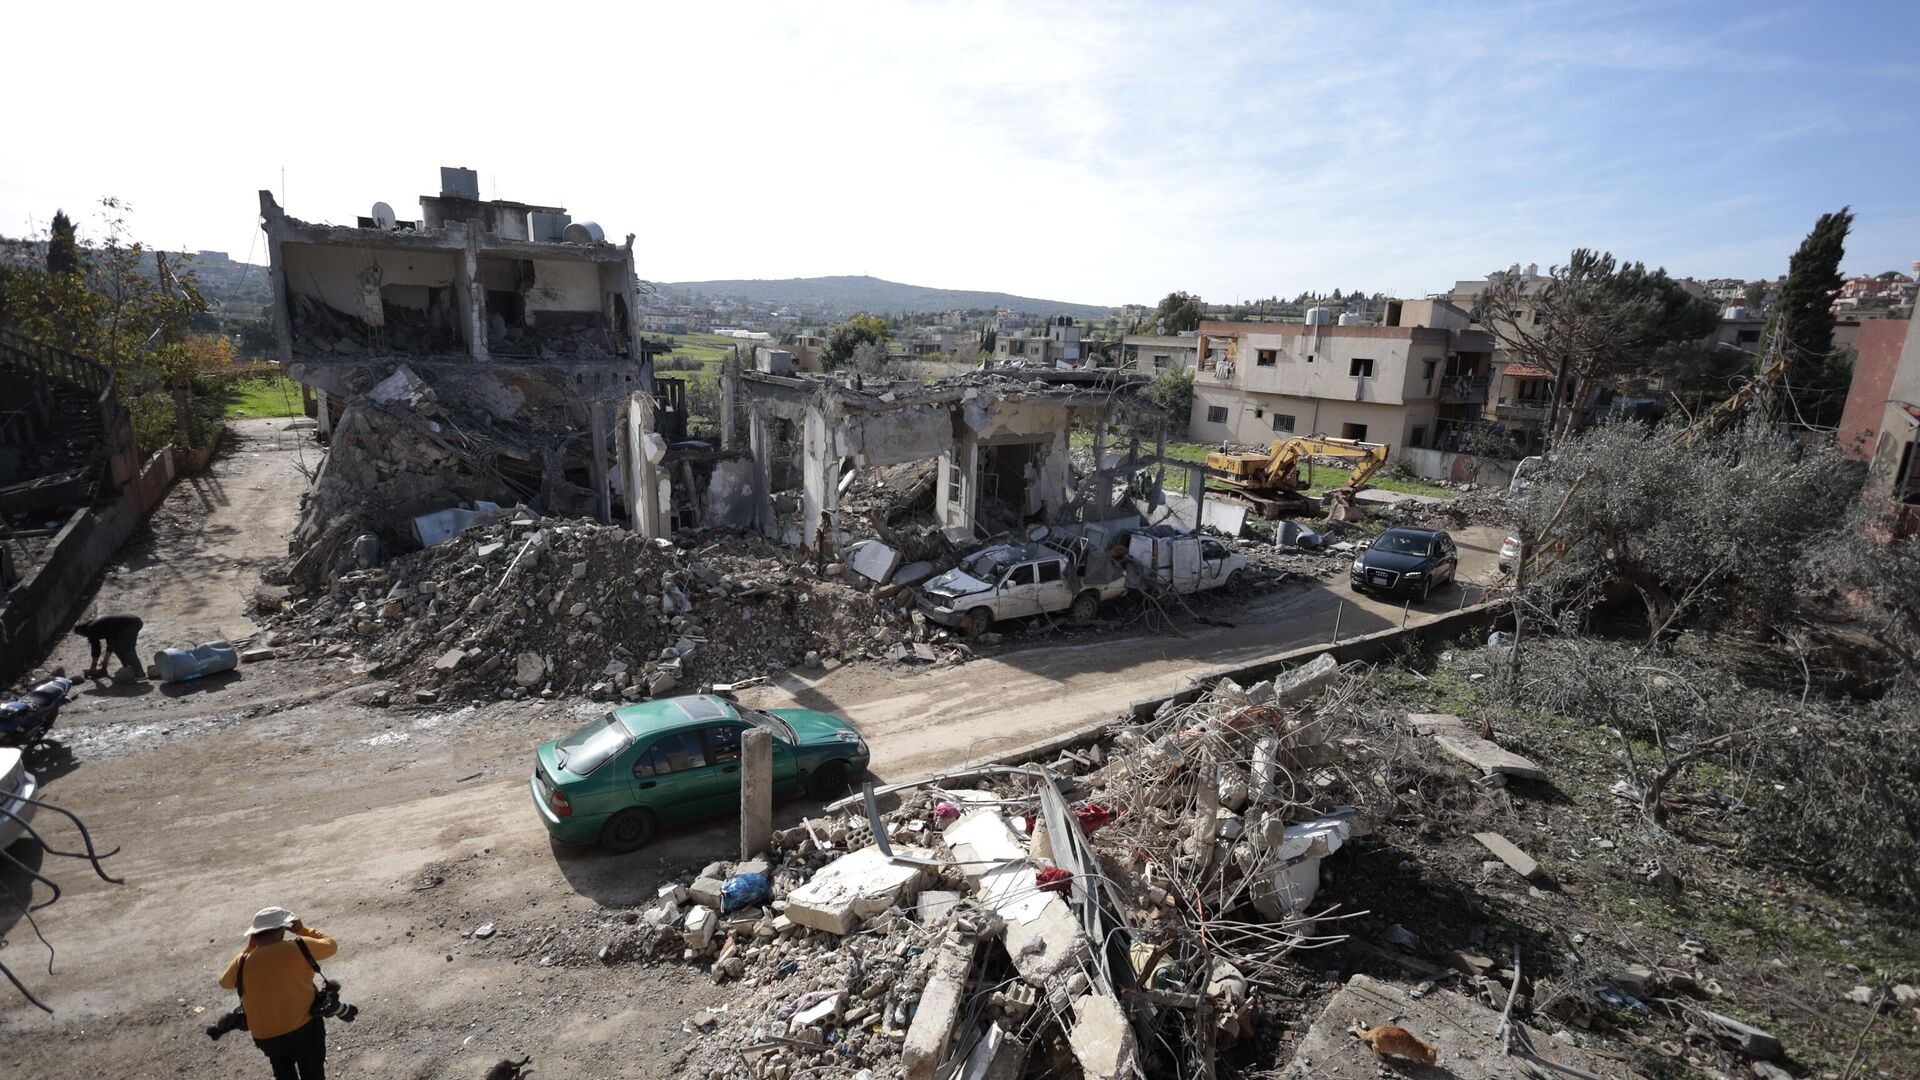 لبنان: دمار في الجنوب بـ 1.2 مليار دولار منذ بداية حرب غزة